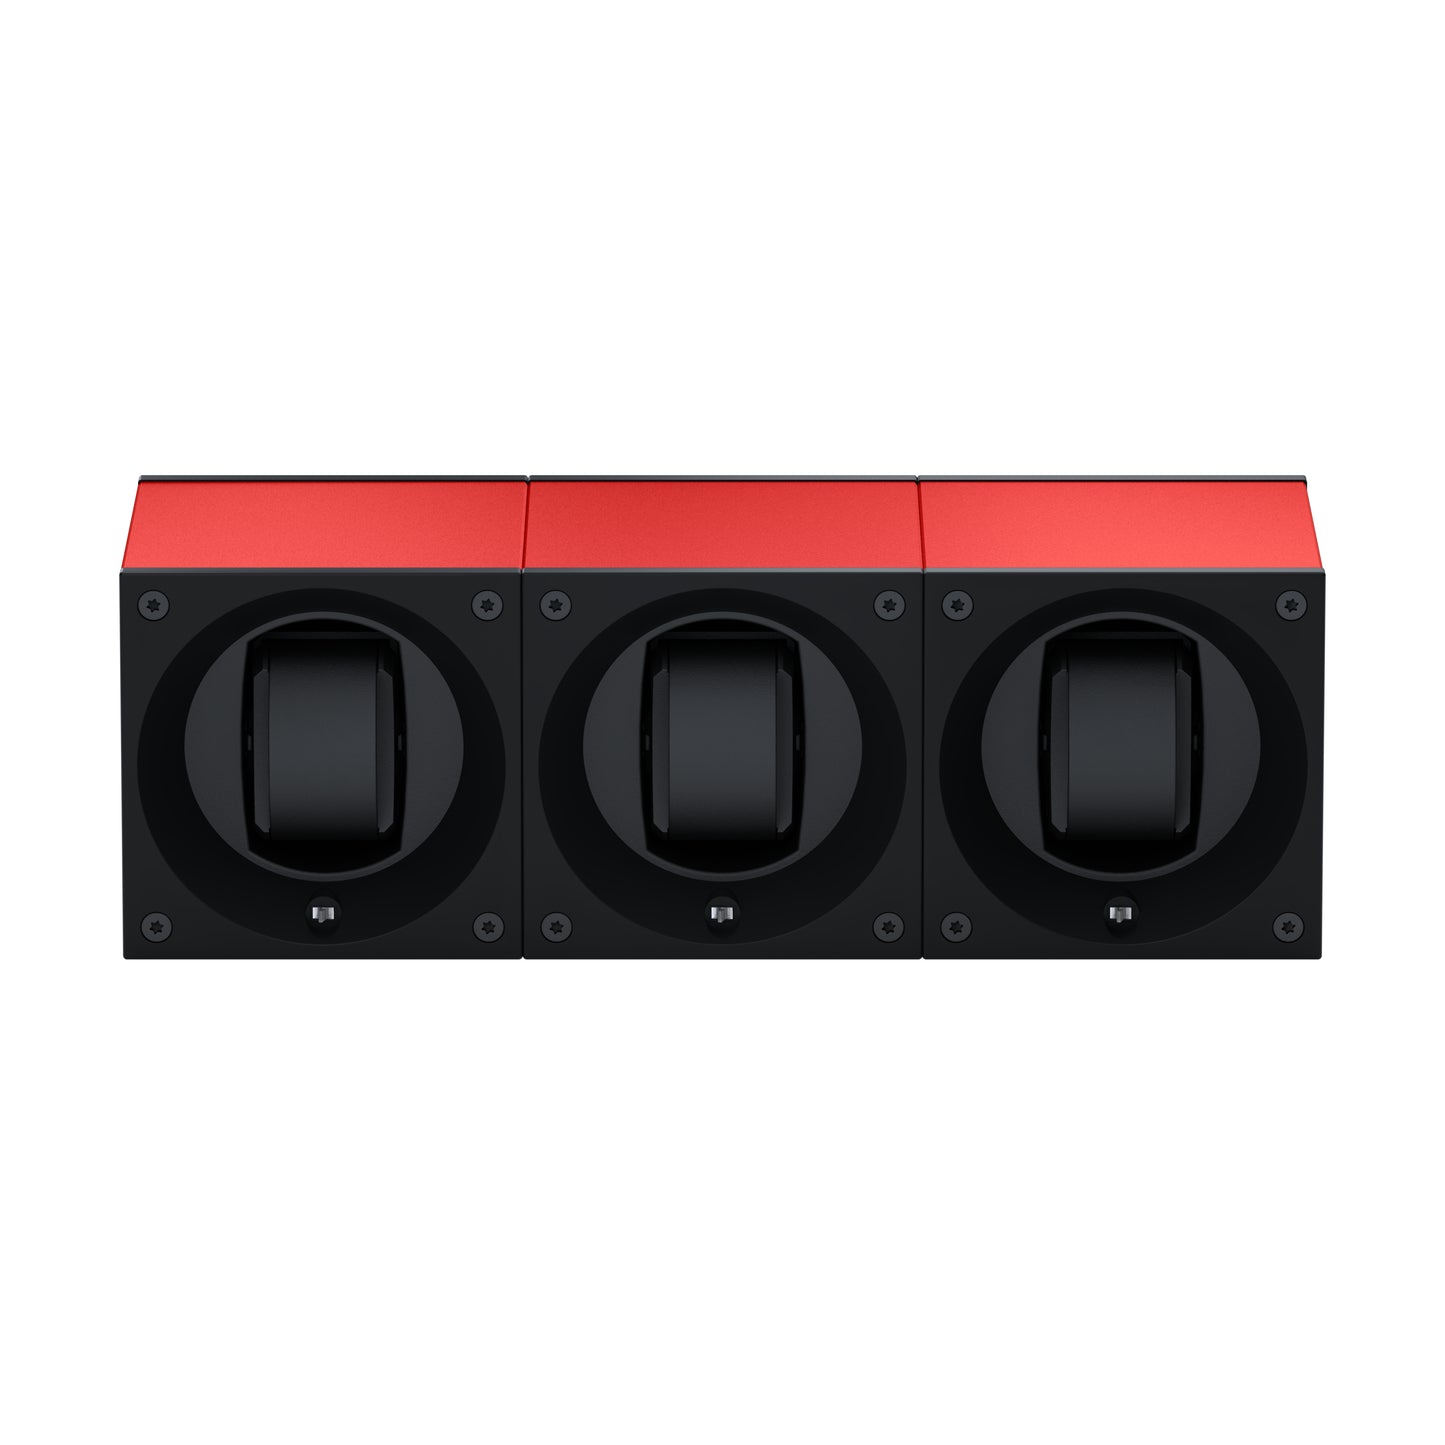 Masterbox 3 montres Aluminium Rouge : écrin rotatif pour montre automatique